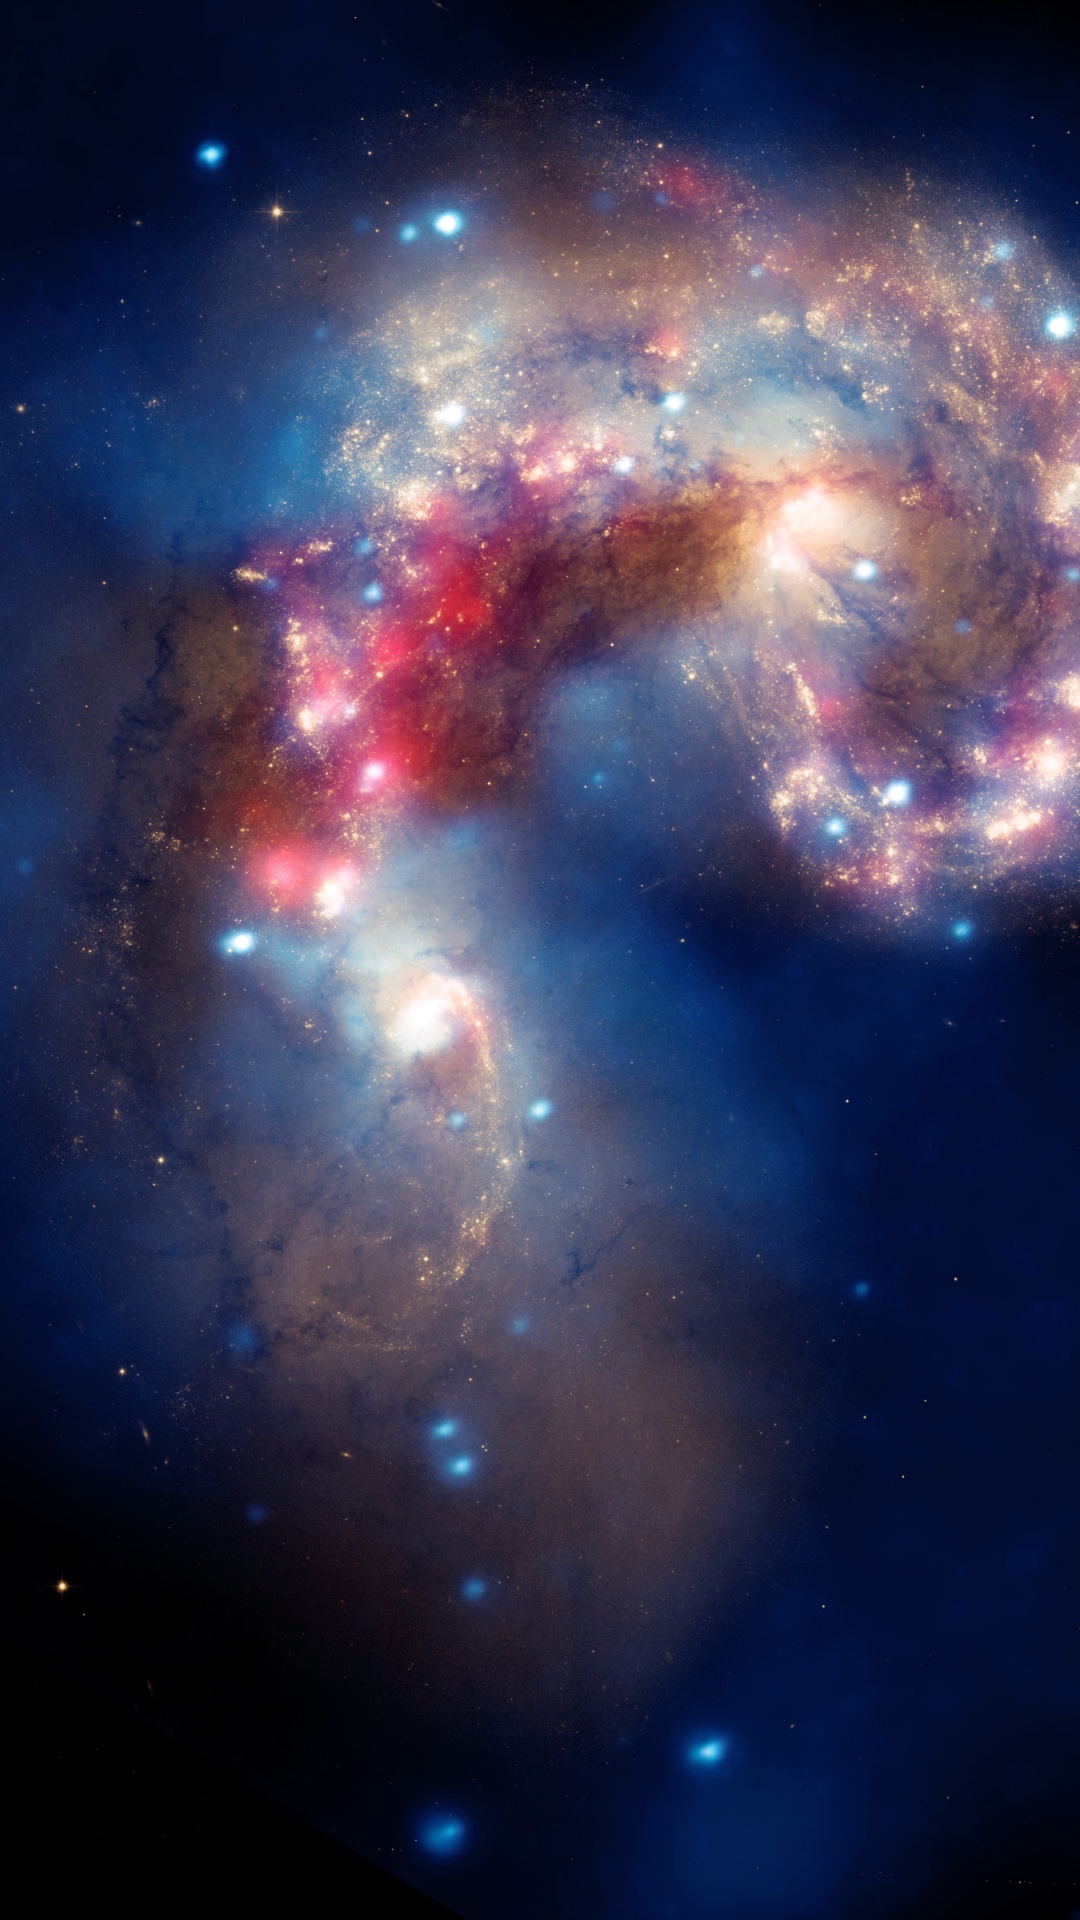 Обои Усики Галактик, космический телескоп Хаббл, взаимодействующие галактики, Чандра рентгеновской обсерватории, Галактика в разрешении 1080x1920